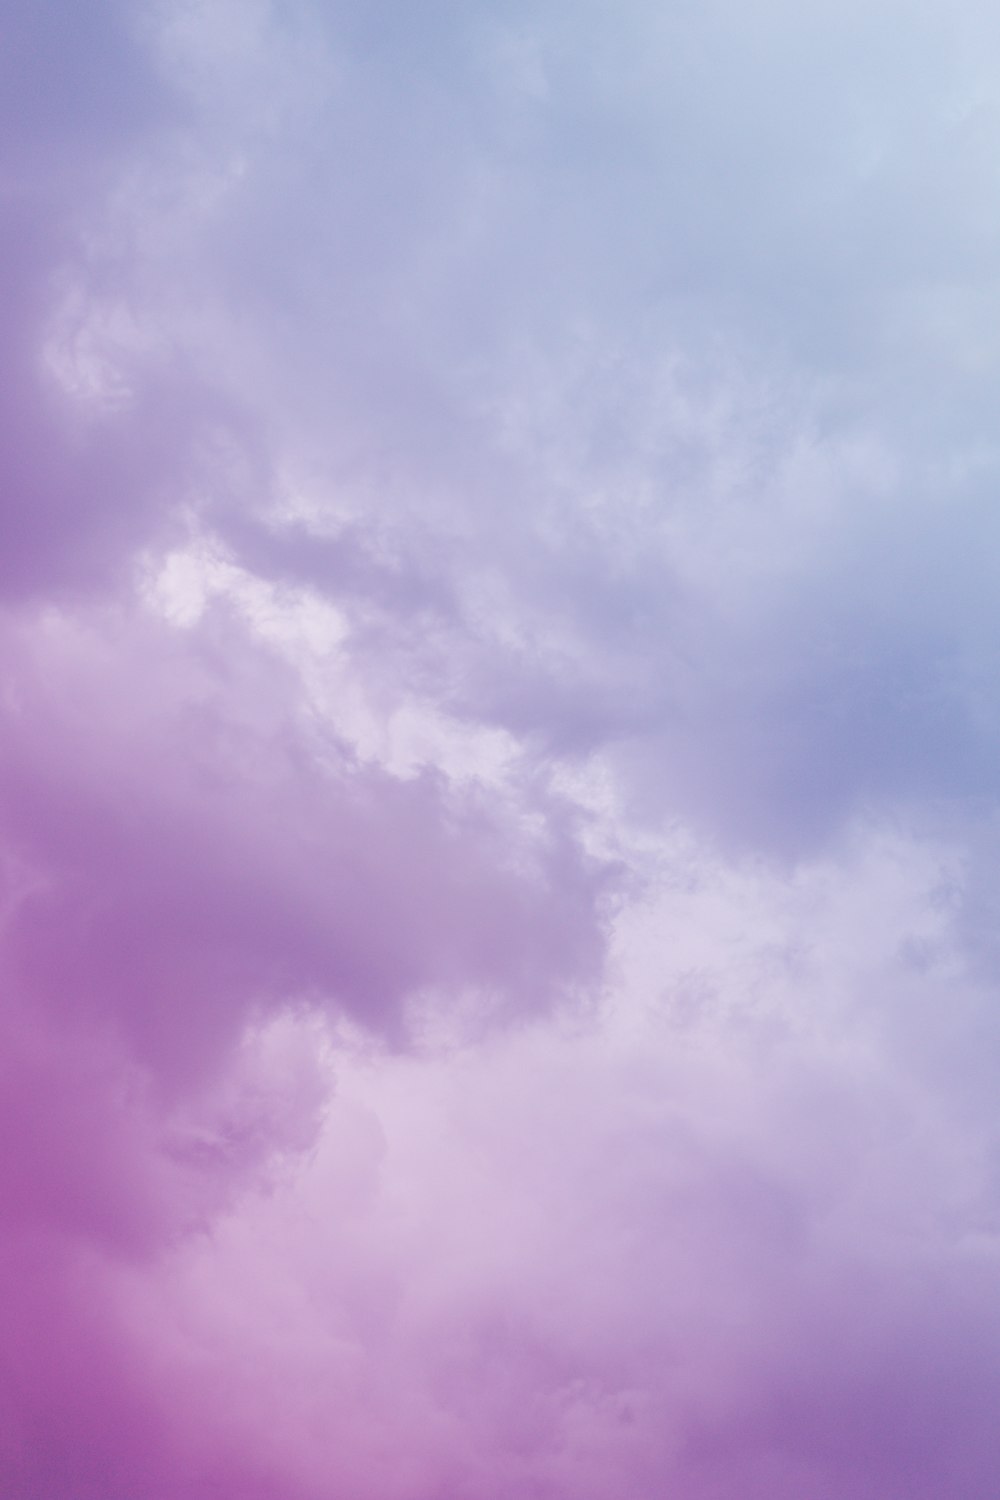 ciel nuageux violet et blanc